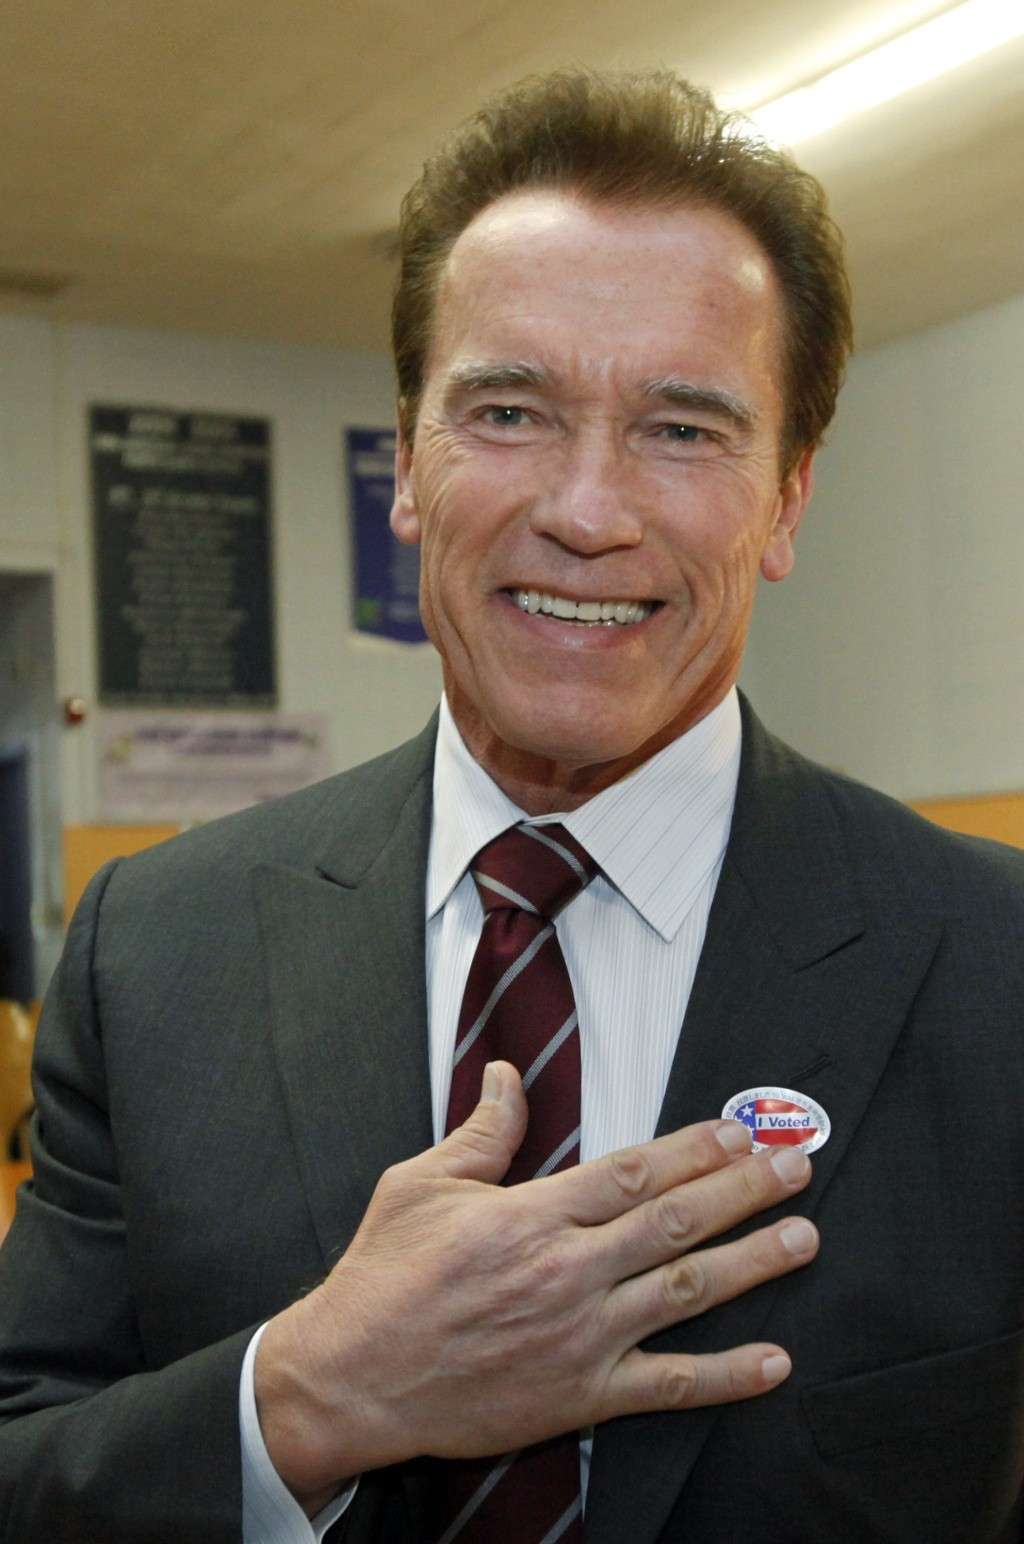 Arnold Schwarzenegger en photos - Page 11 Arnold14